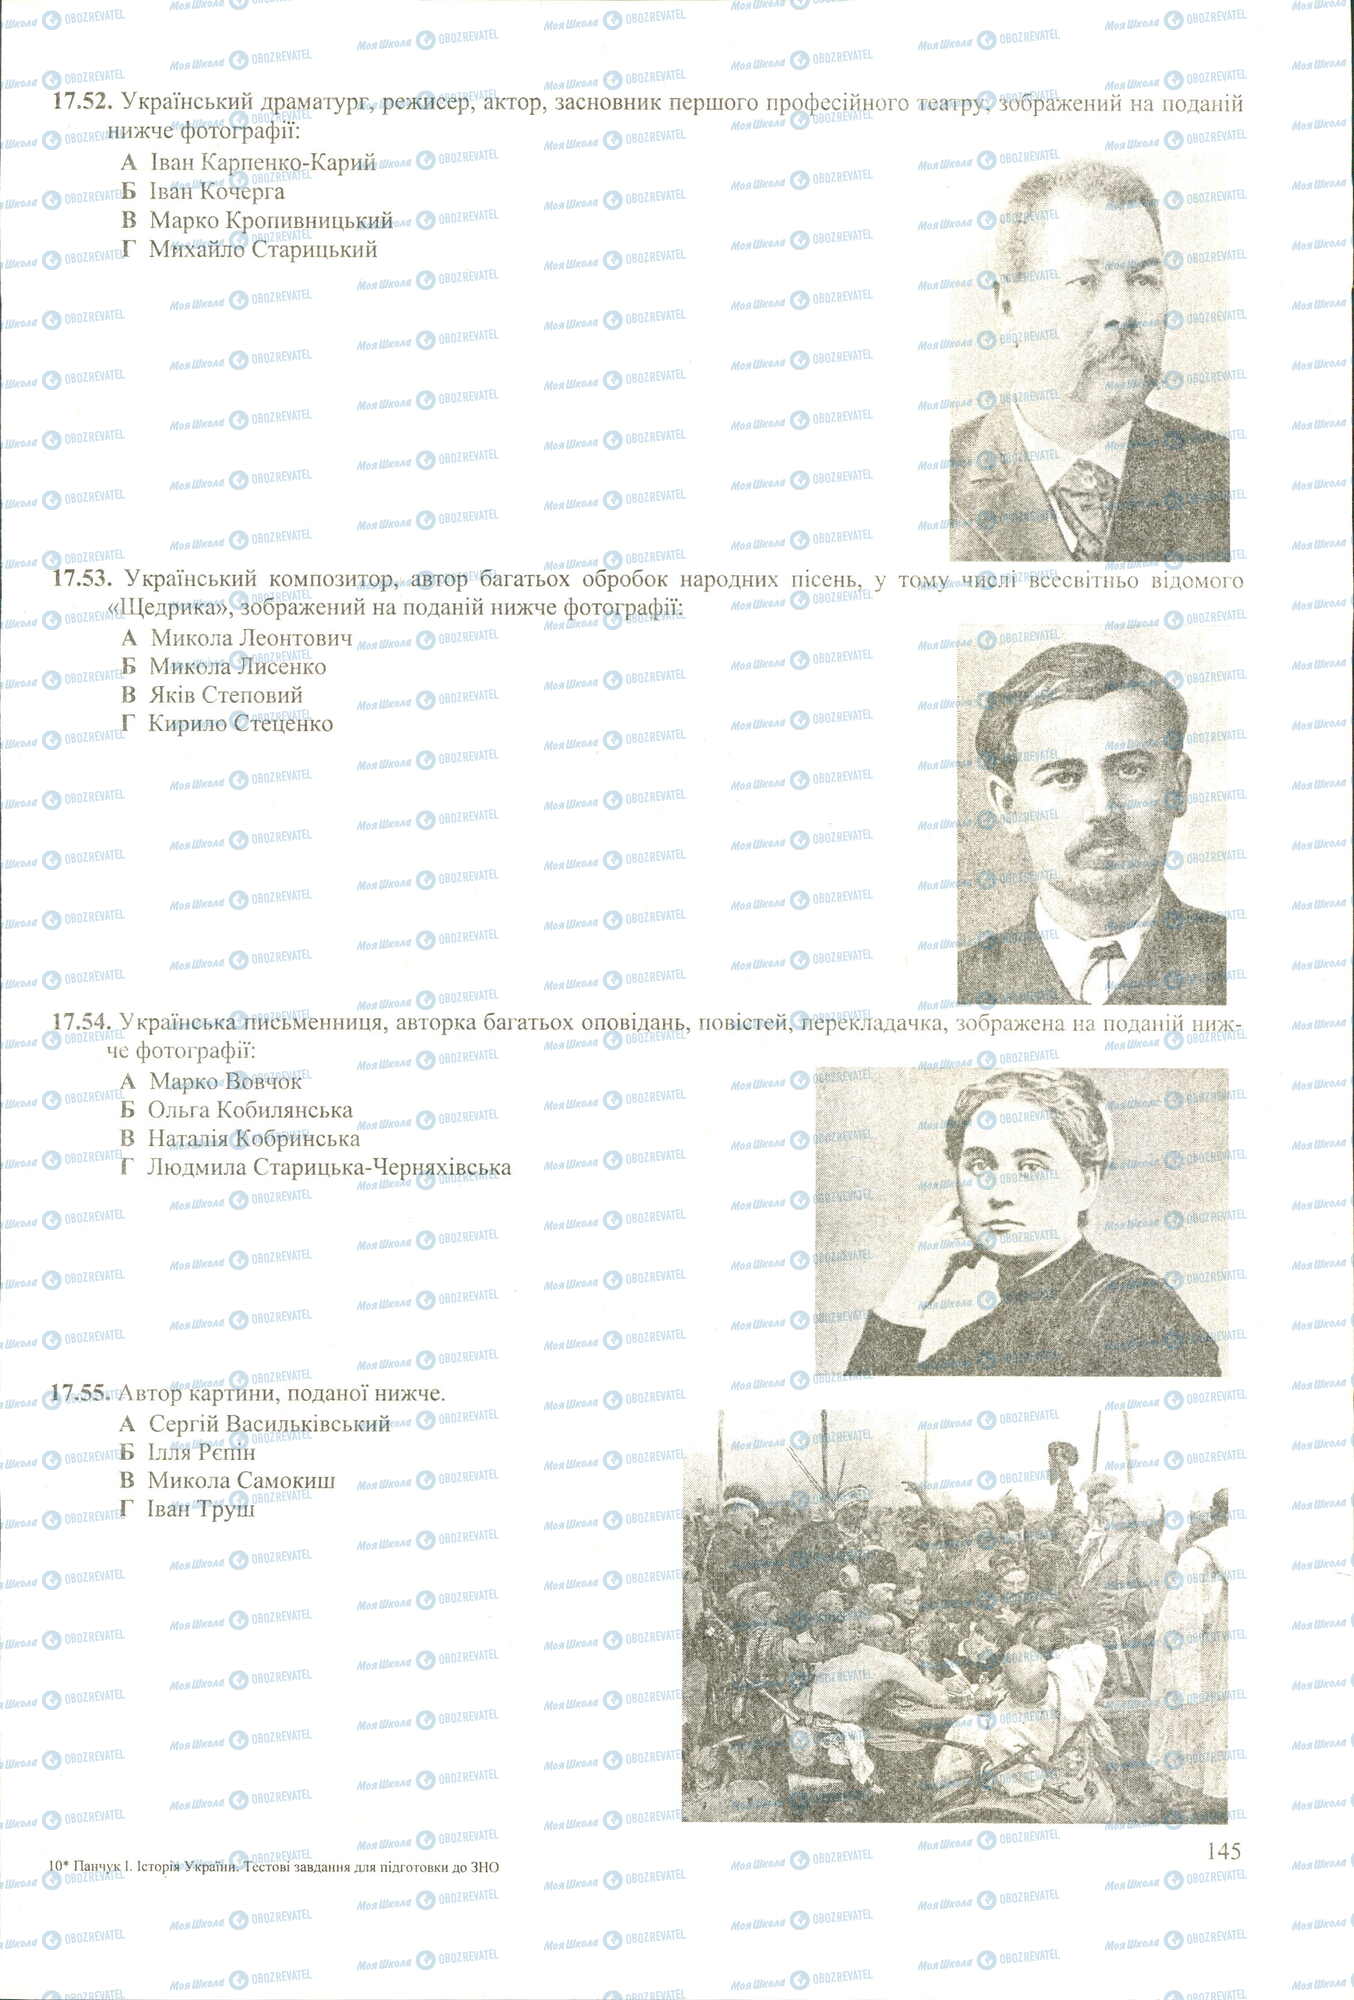 ЗНО История Украины 11 класс страница 52-55